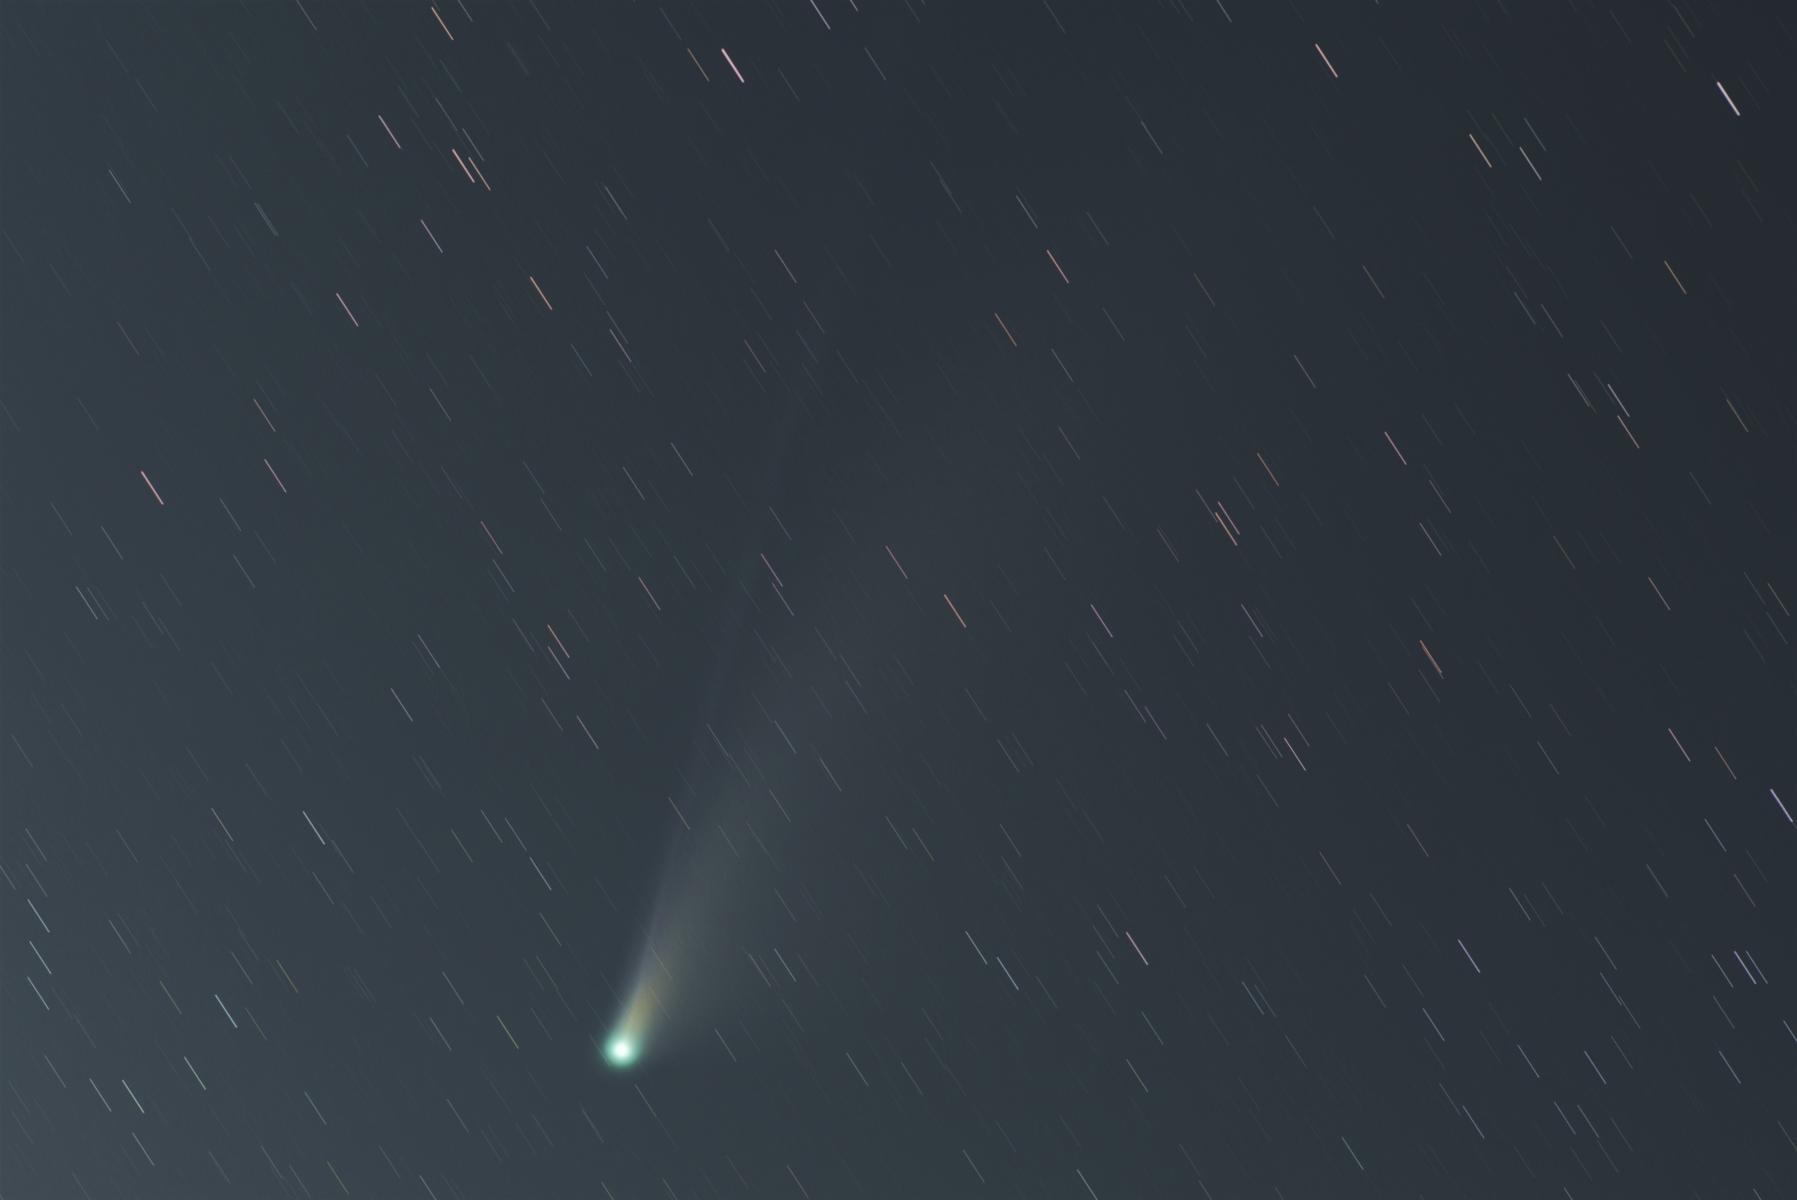 comet data for skychart